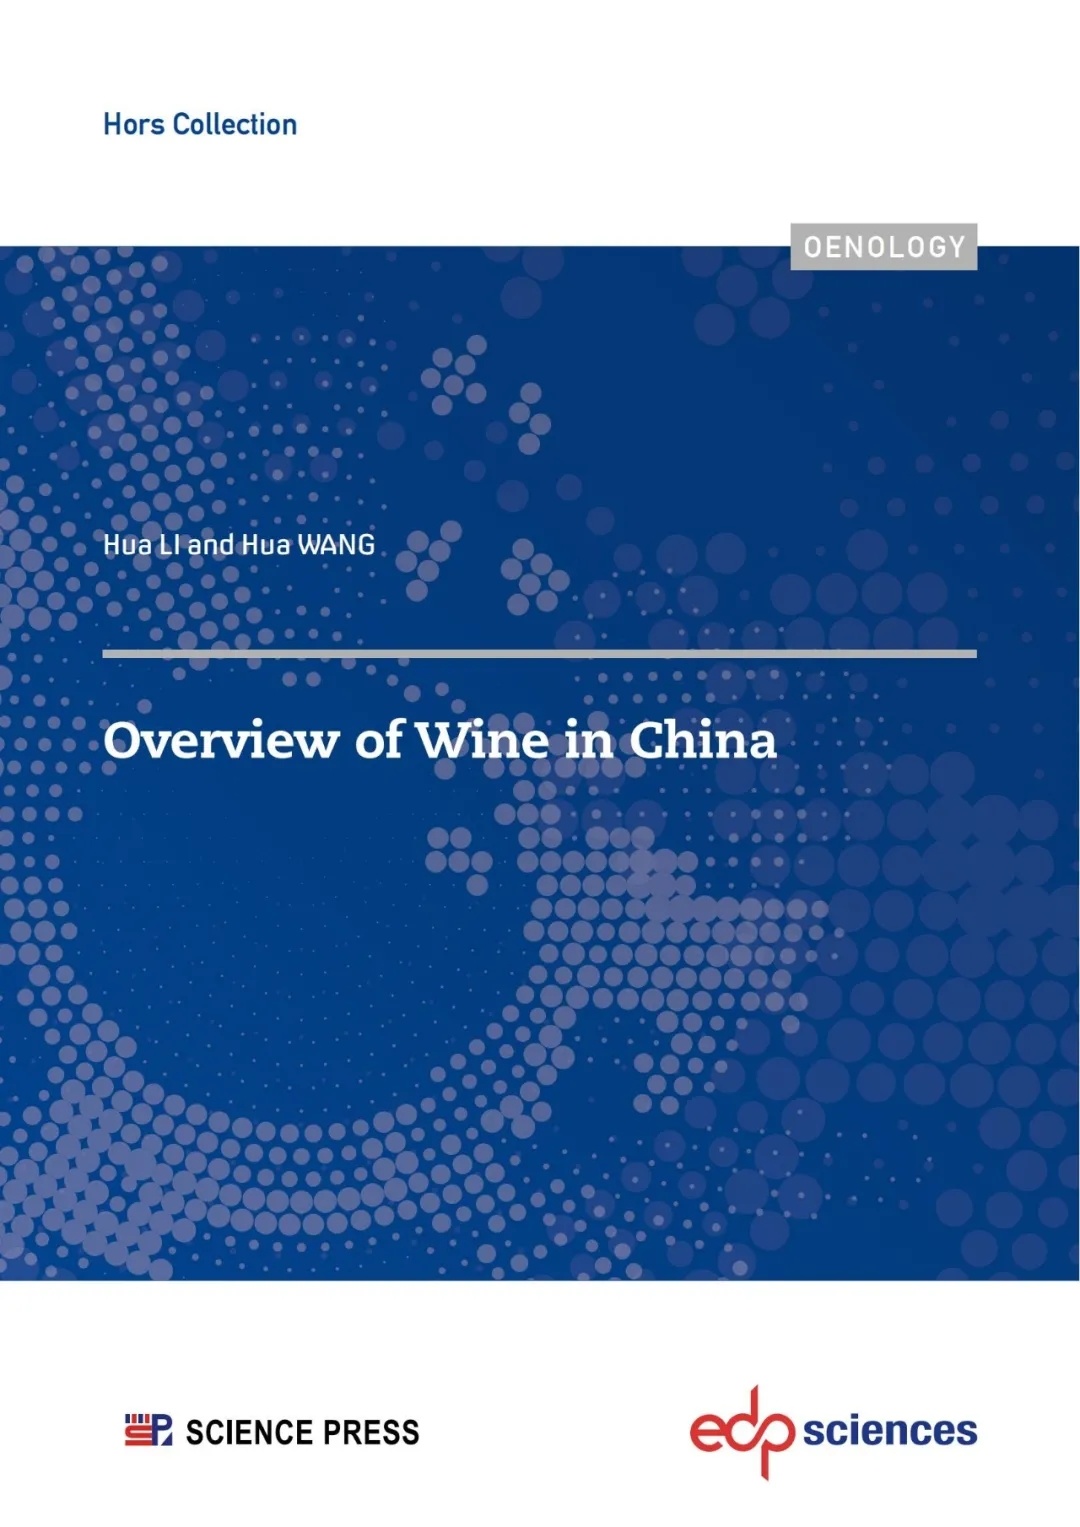 李華、王華教授專著《中國葡萄酒》英文版即將在法國出版發行